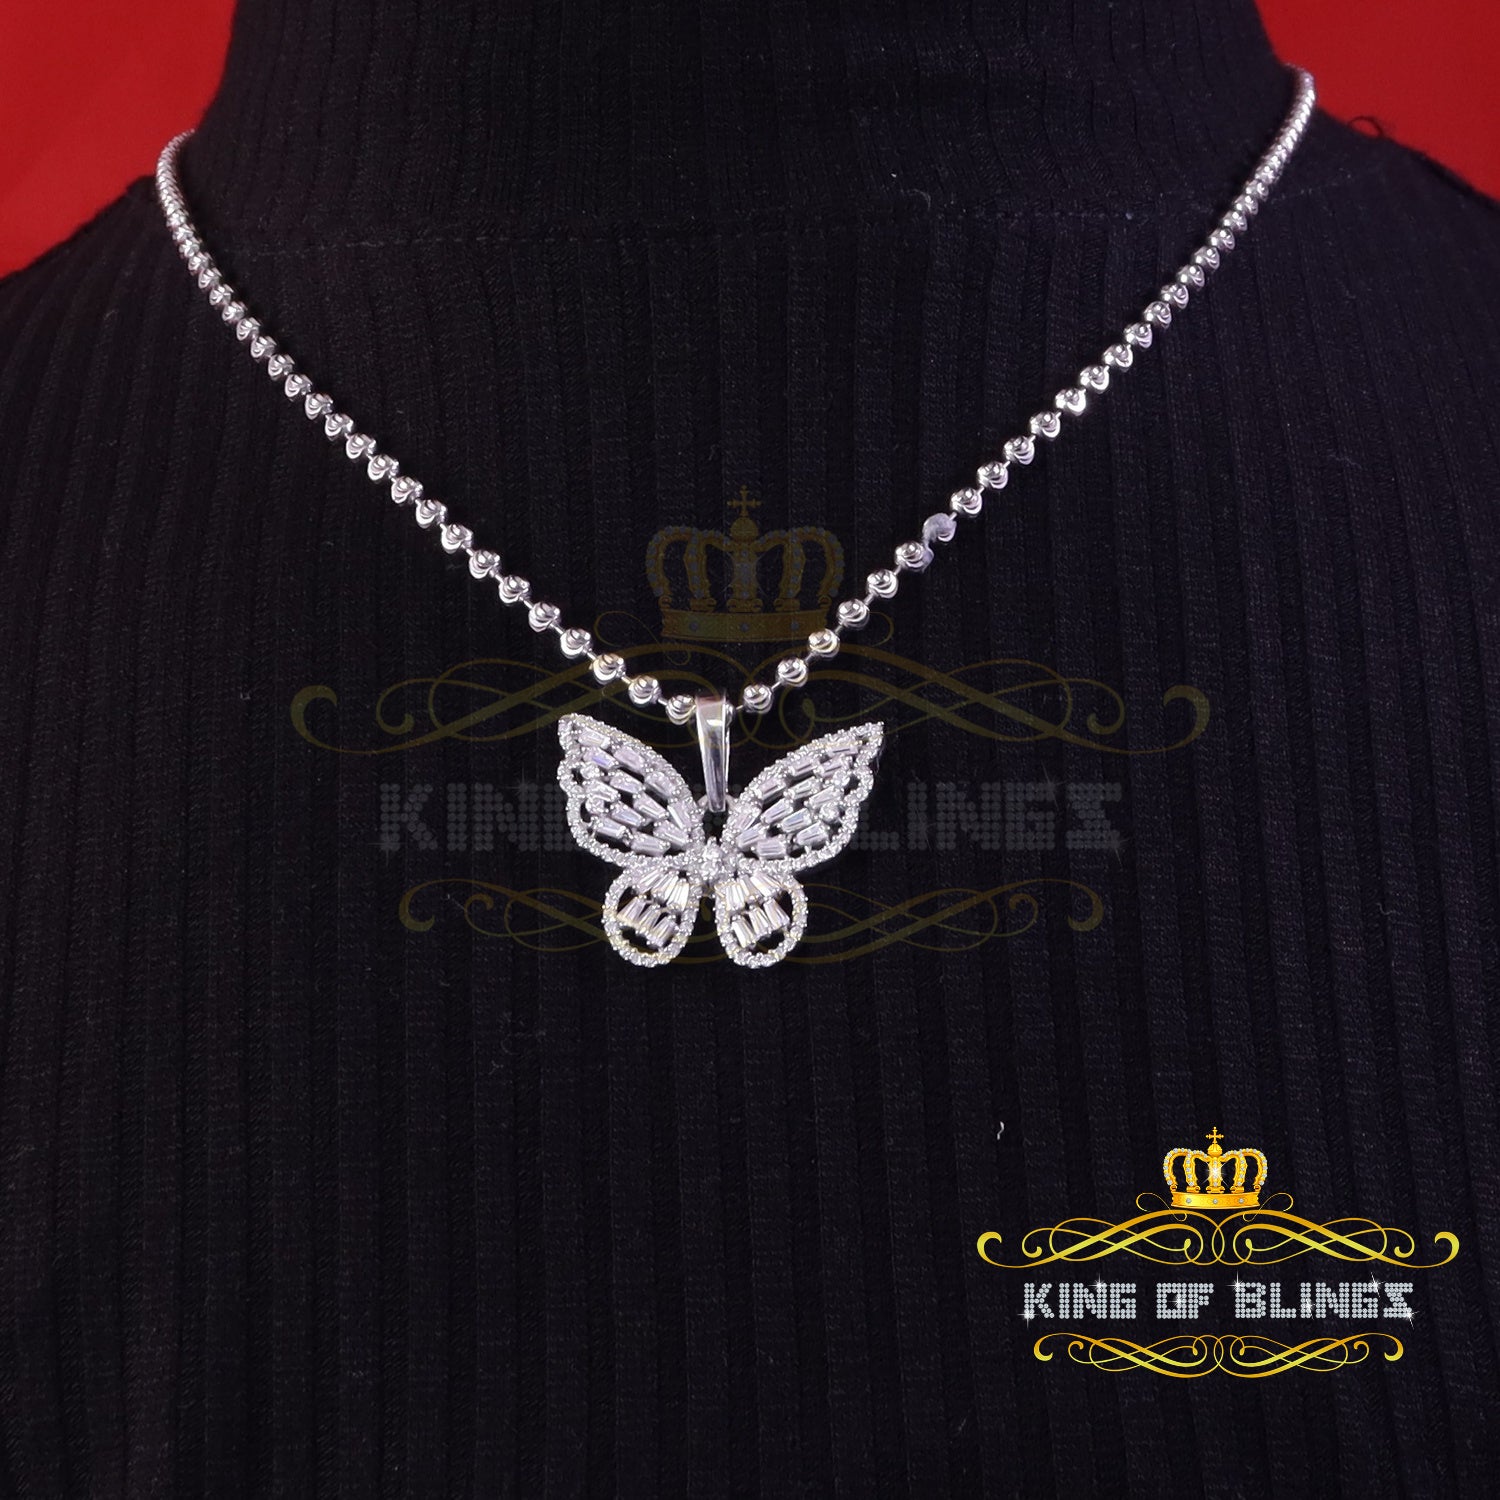 King Of Bling's Men's/Womens 925 Silver White 1.75ct VVS 'D' Moissanite Butterfly Pendant KING OF BLINGS